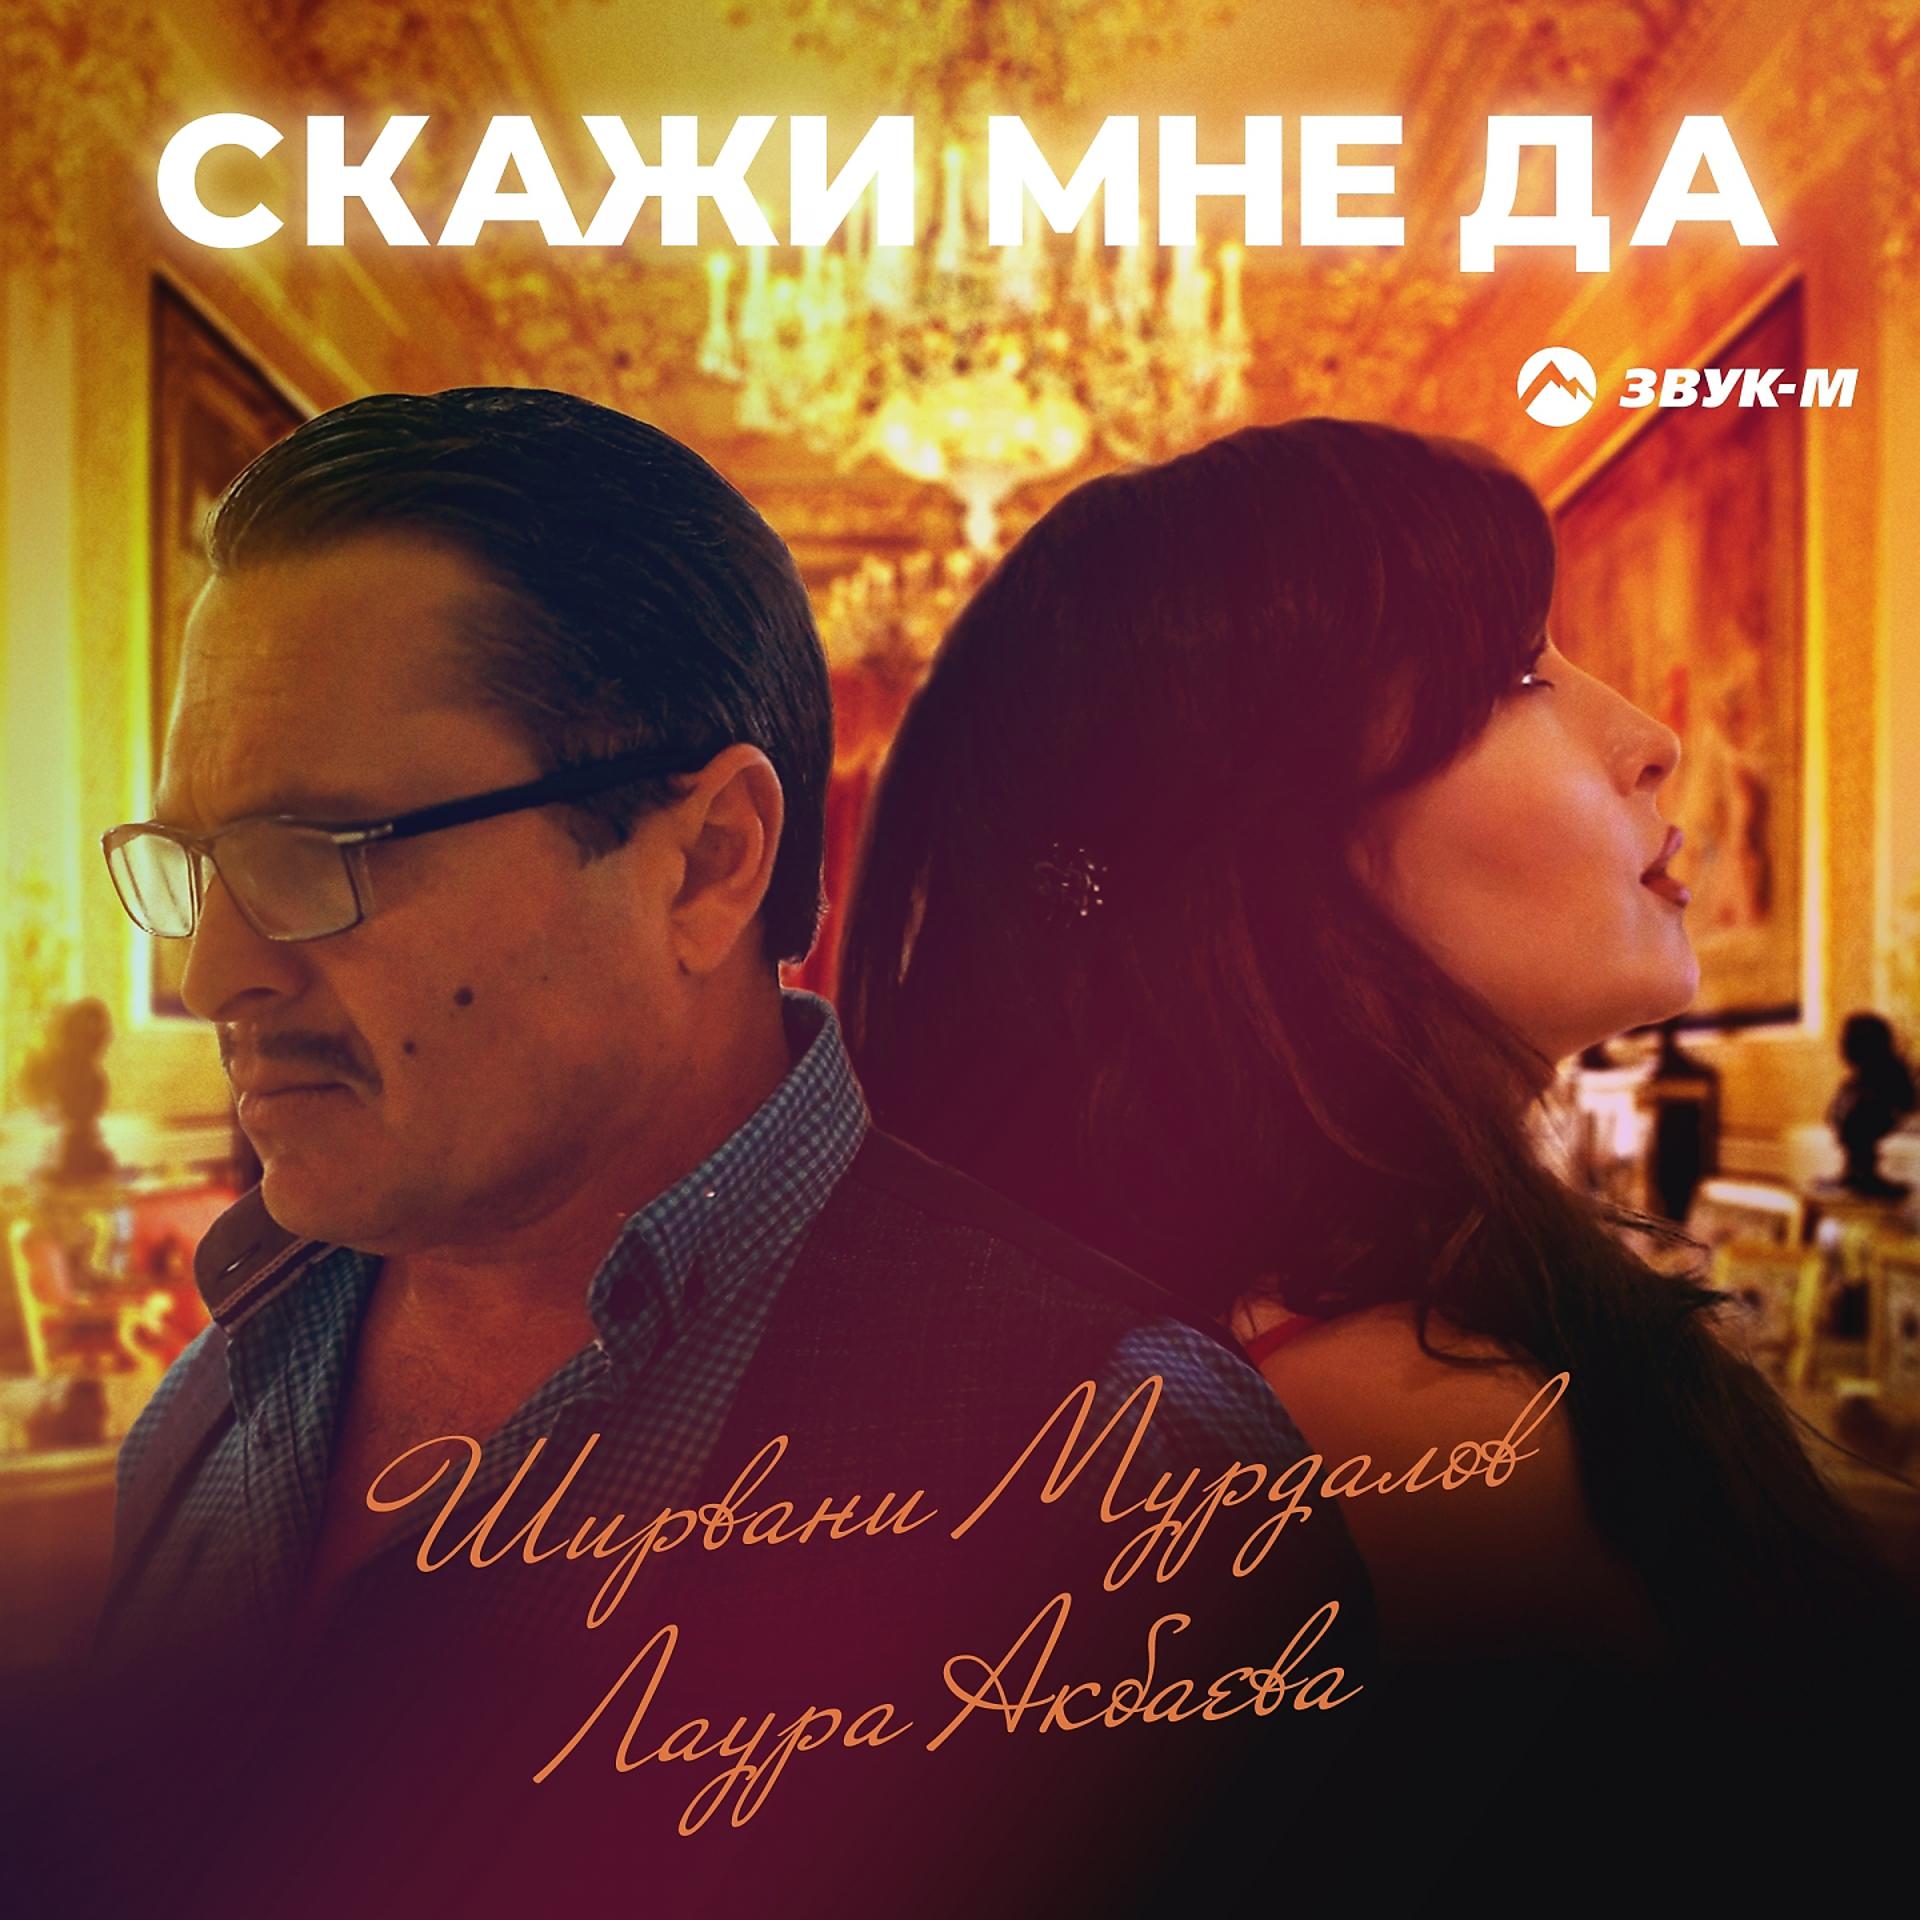 Постер к треку Ширвани Мурдалов, Лаура Акбаева - Скажи мне да